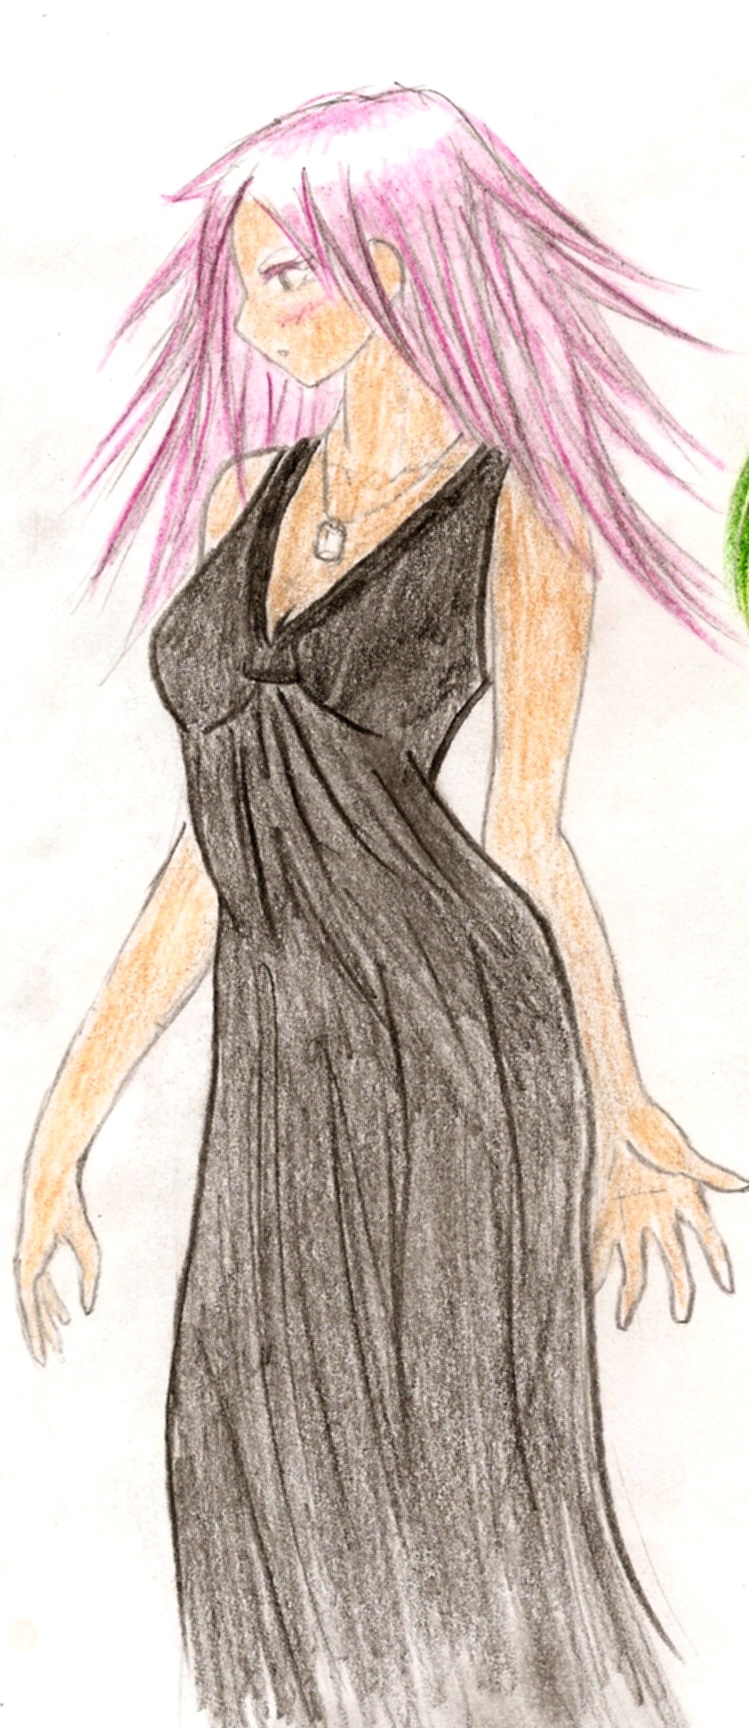 Nova dress by Vesper